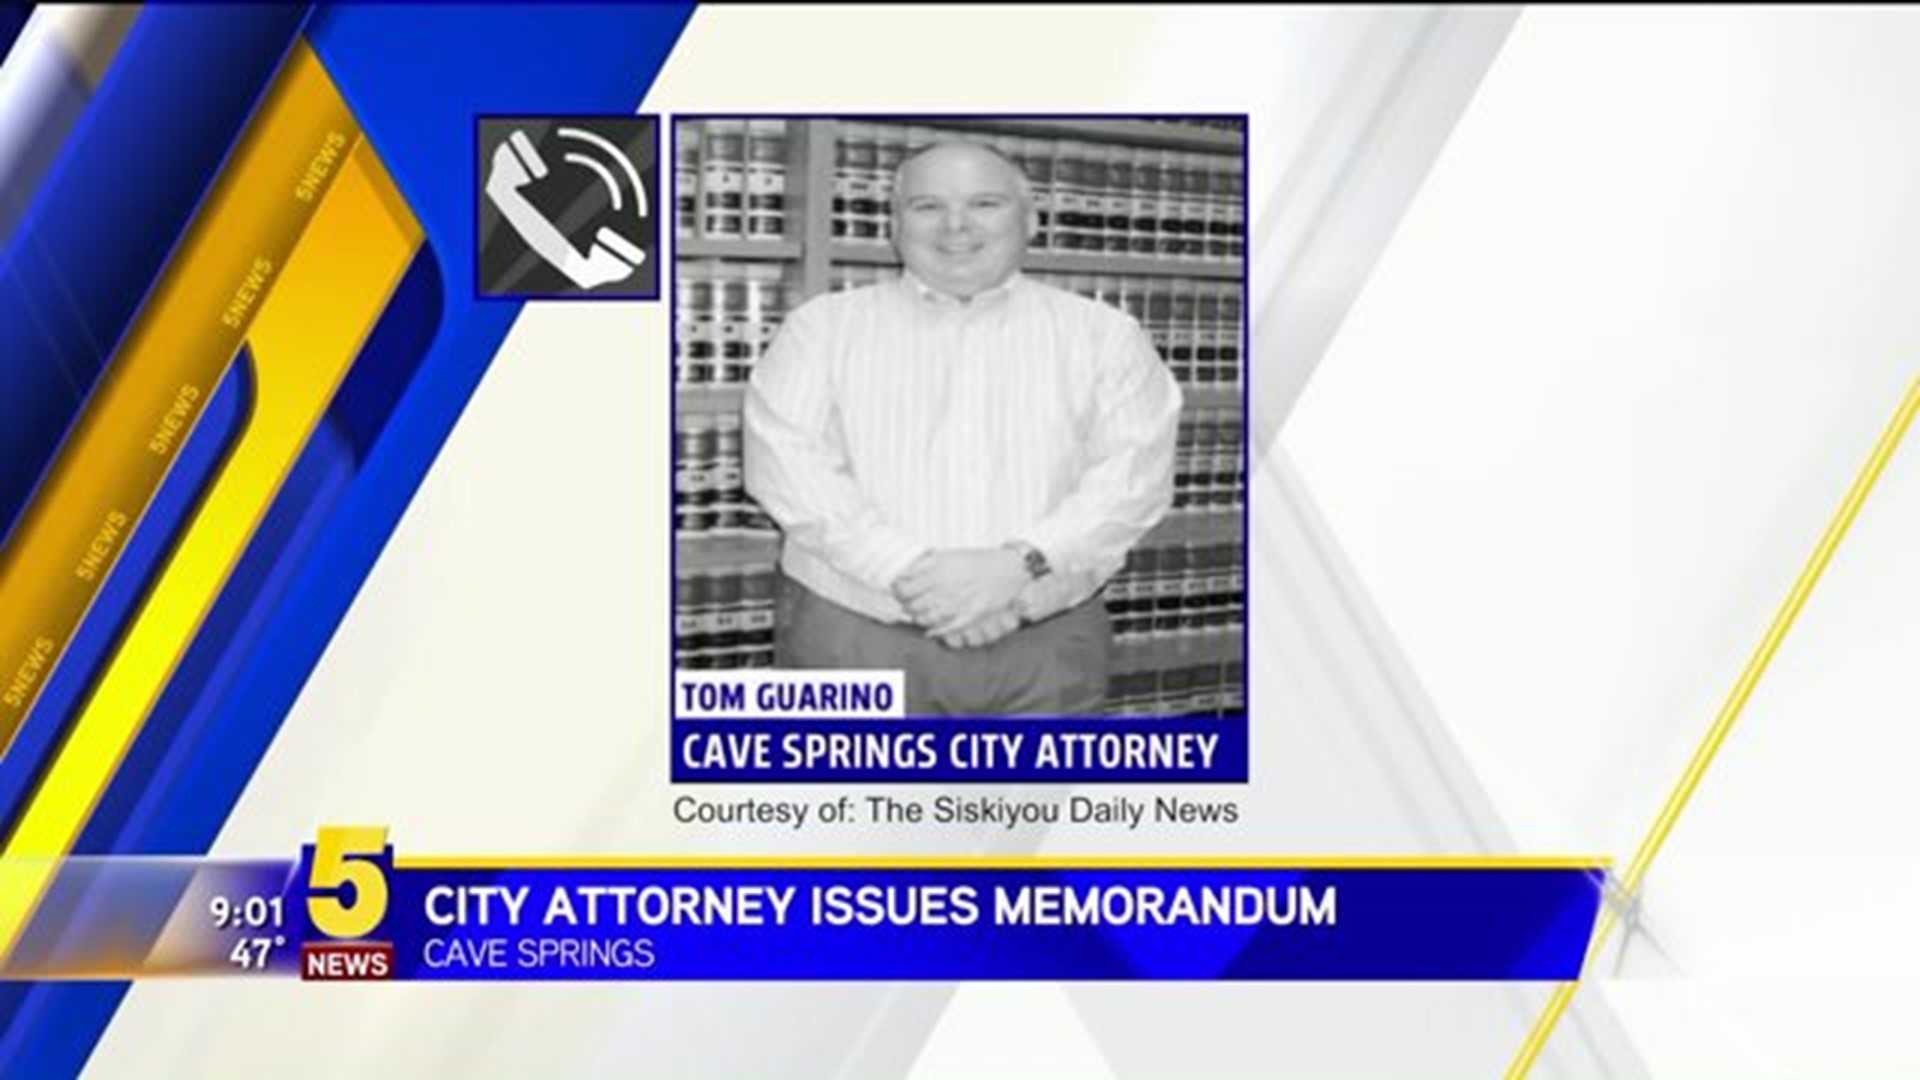 City Attorney Issues Memorandum